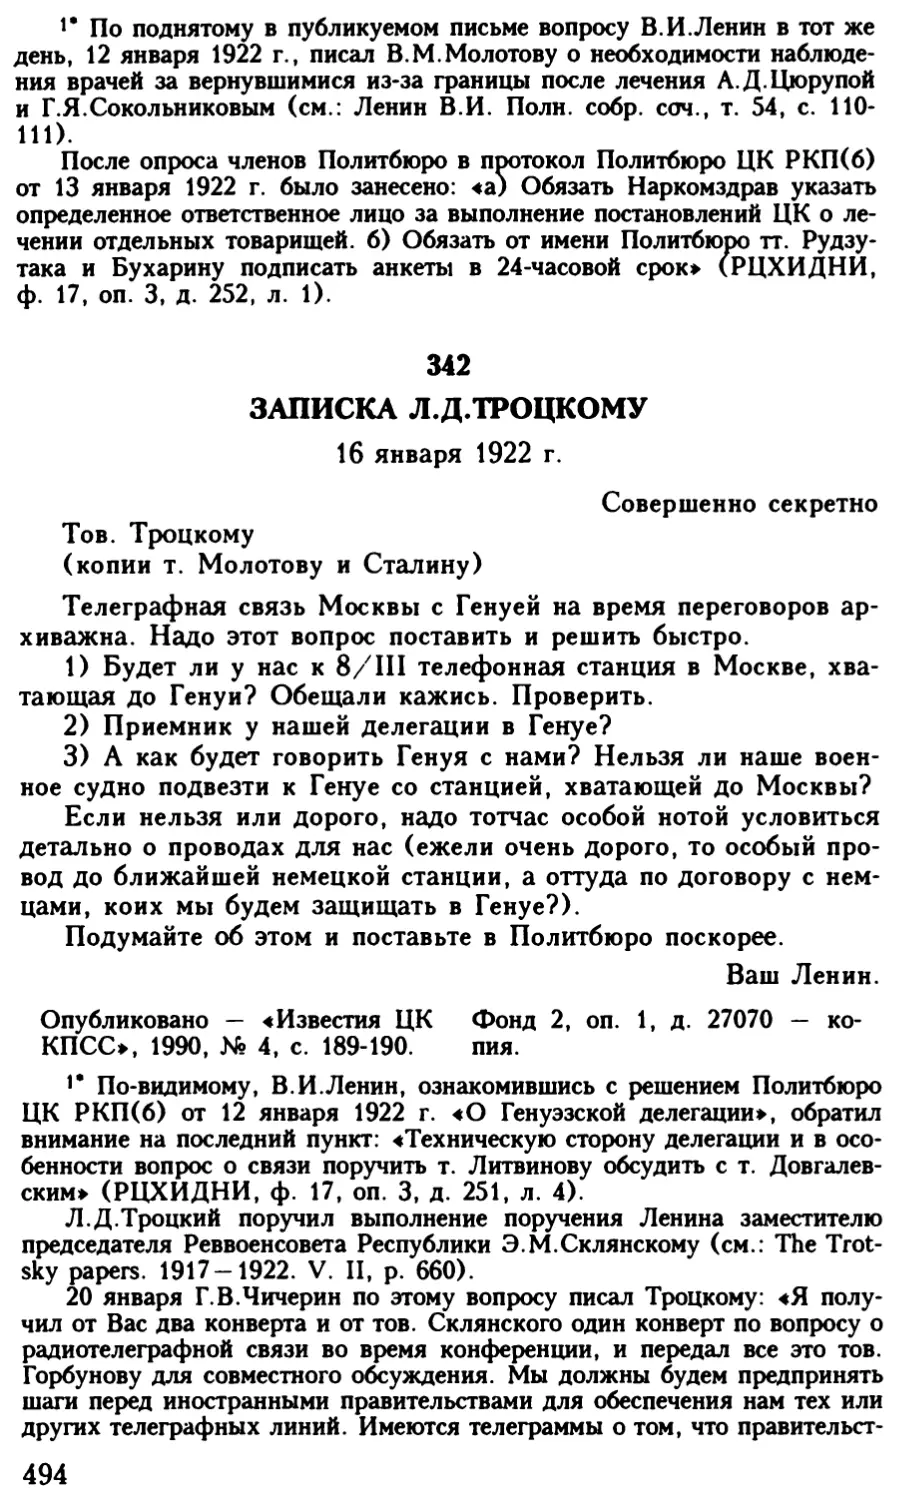 342. Записка Л.Д.Троцкому. 16 января 1922 г